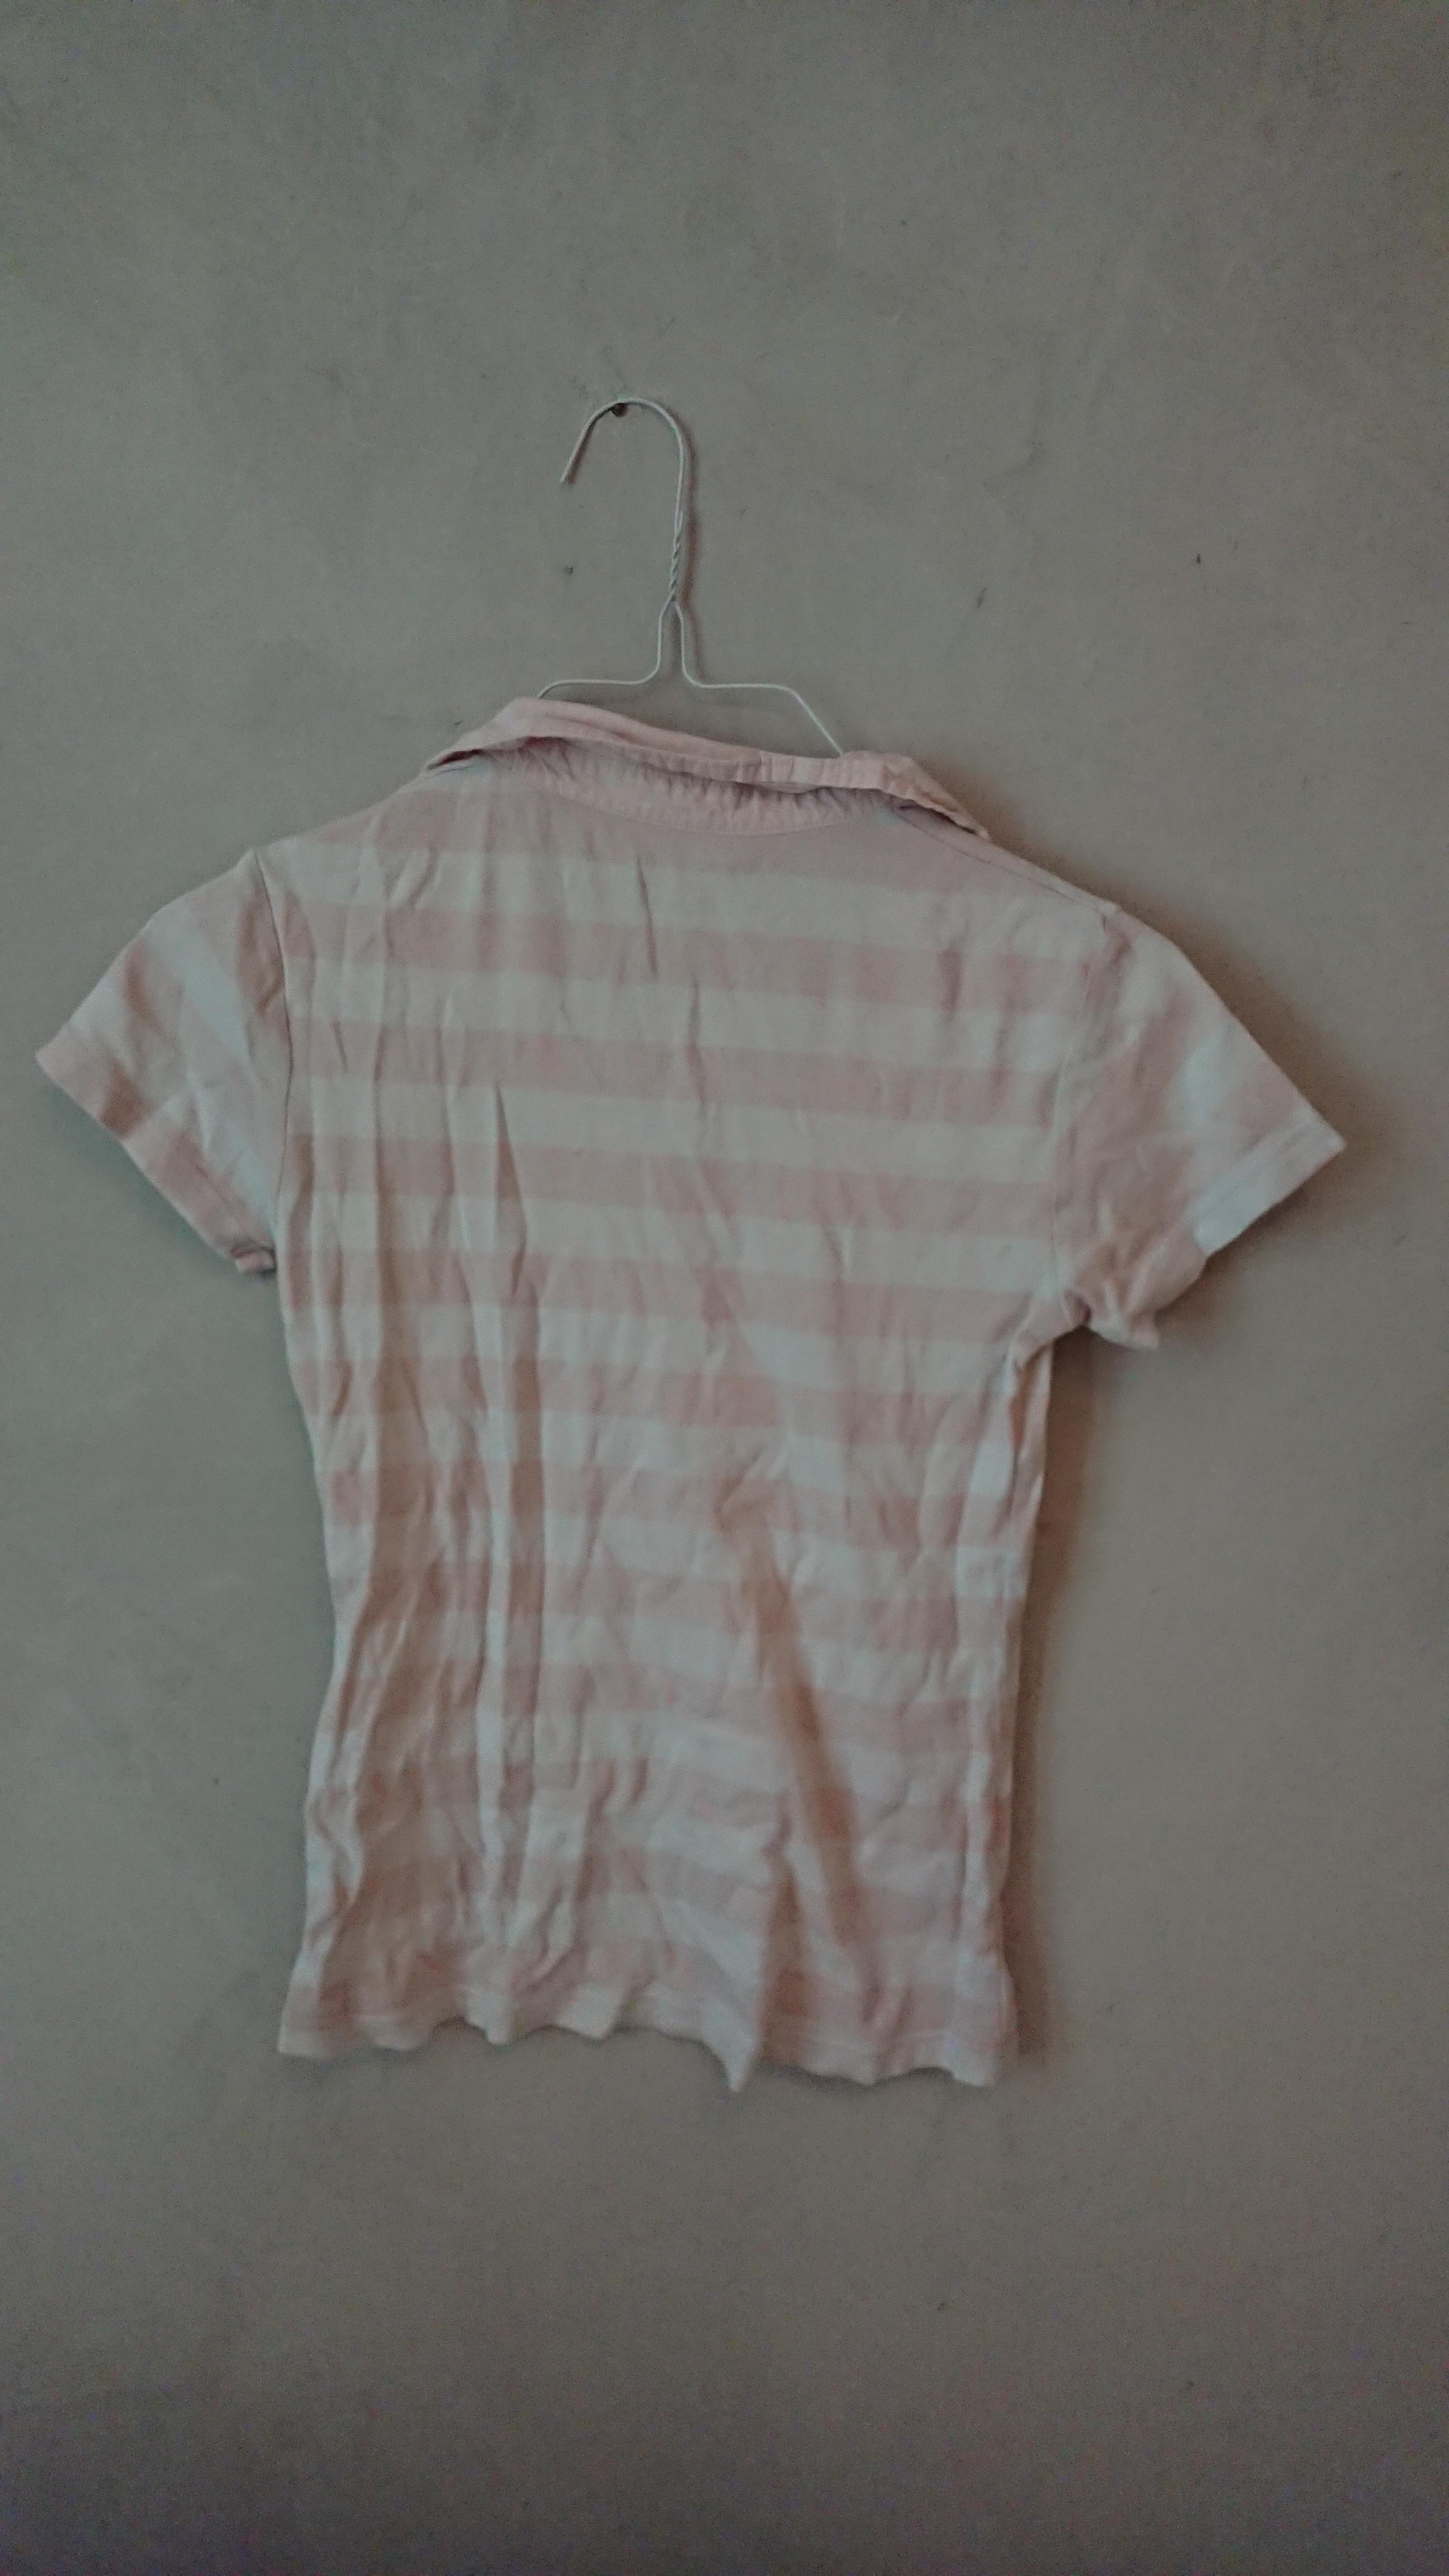 troc de troc t-shirt polo rayures taille m blanc et rose image 1